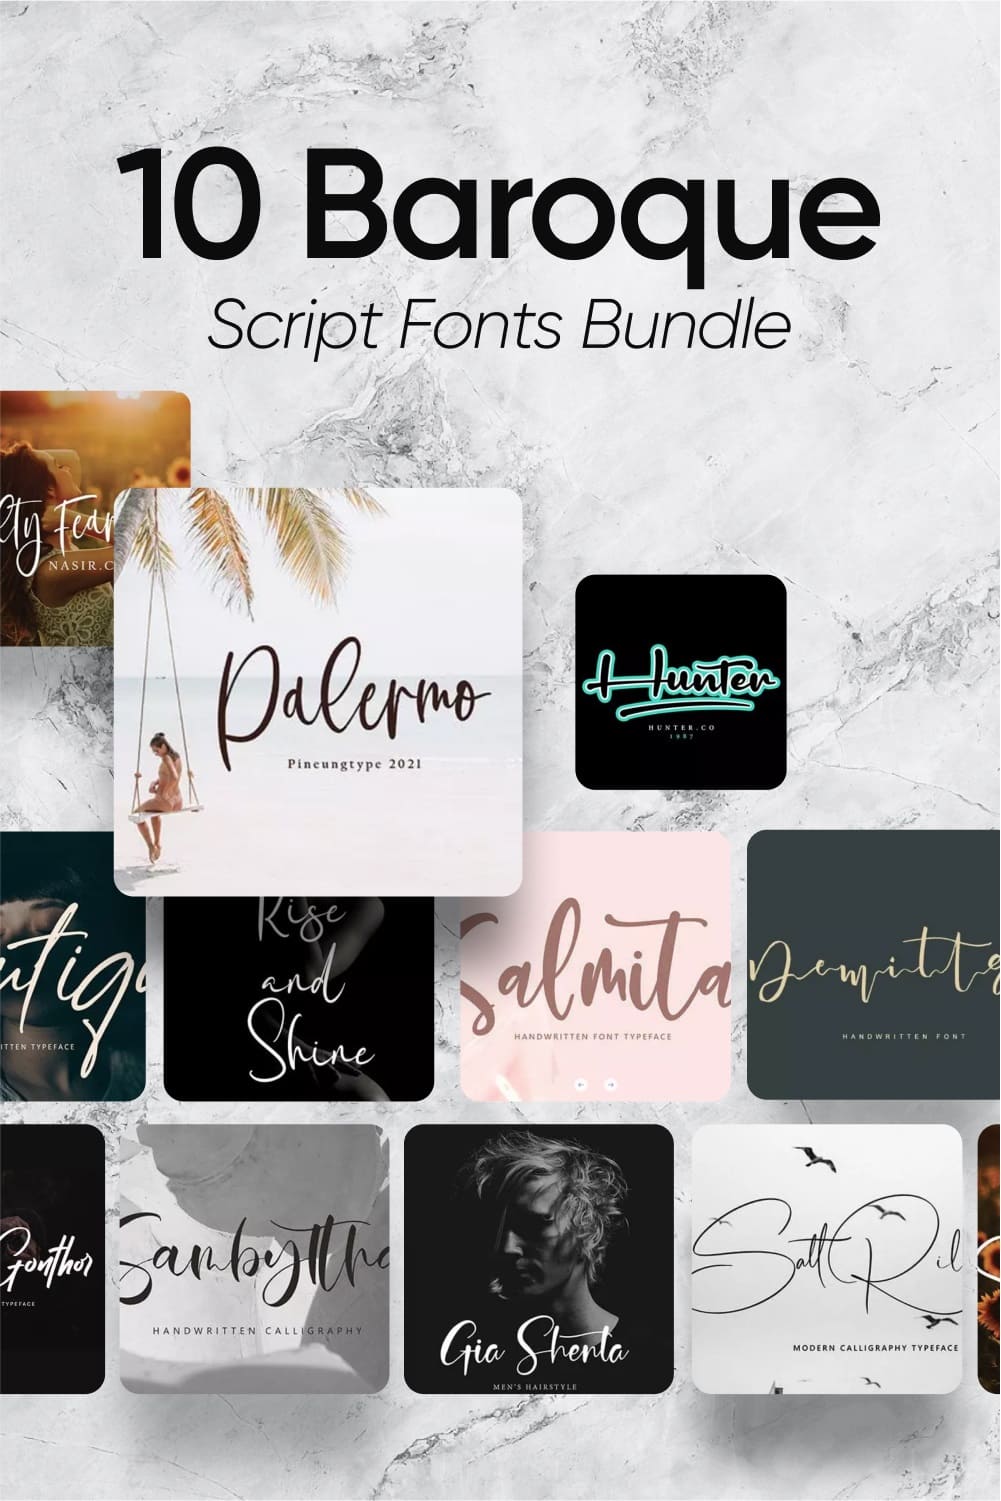 Baroque script fonts bundle Pinterest preview.